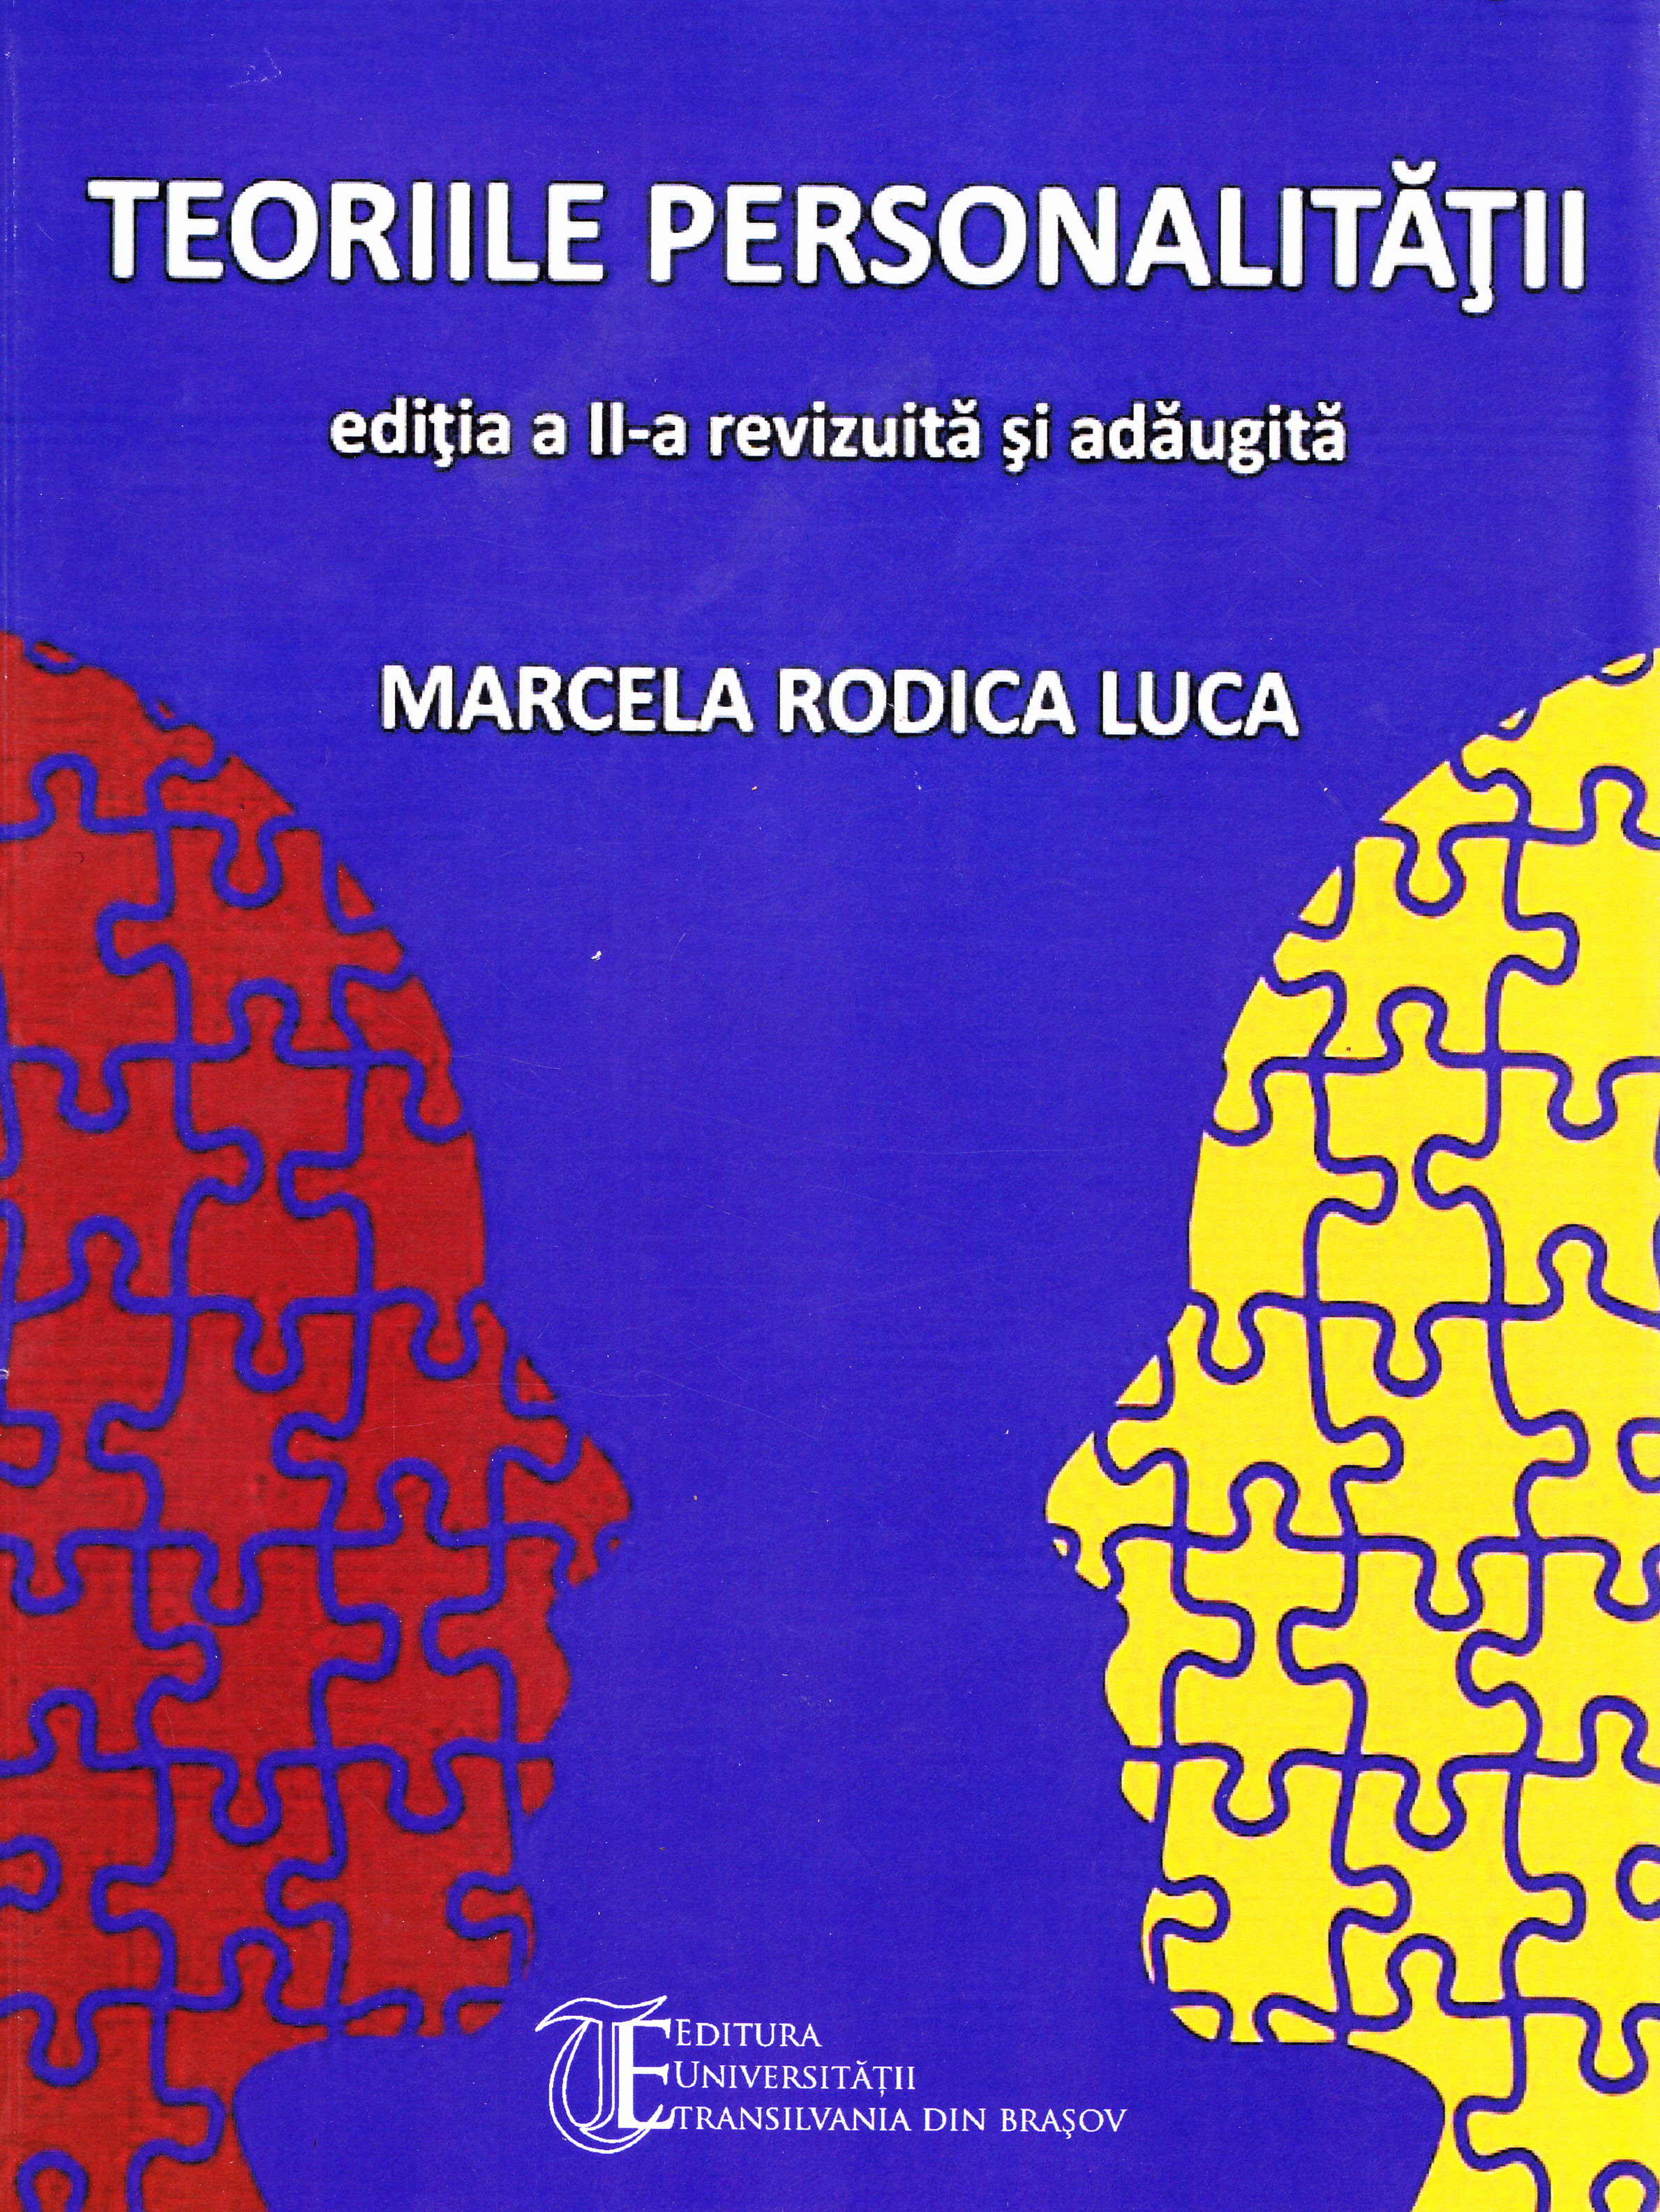 Curs de psihologia personalitatii -Teoriile personalitatii - Marcela Rodica Luca